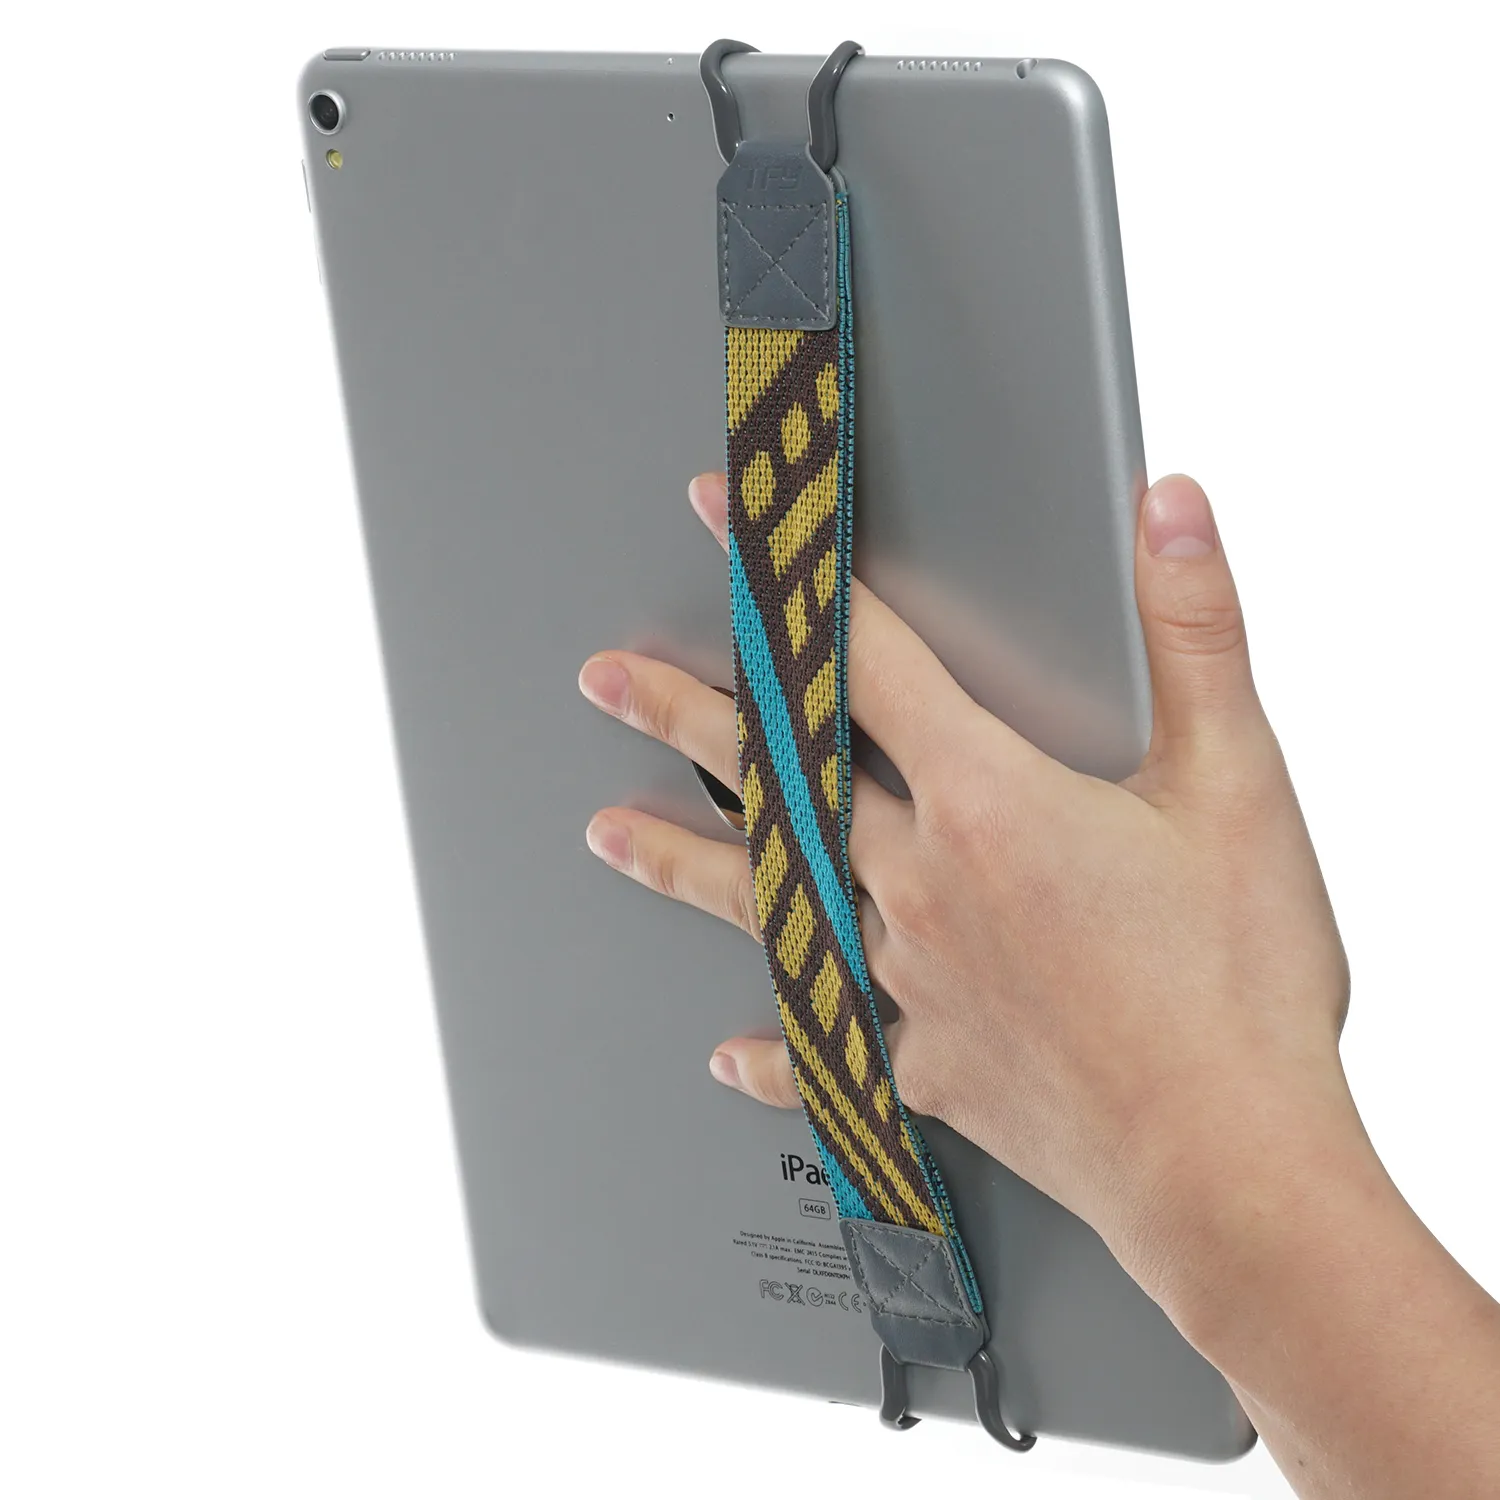 TFY Support de sécurité pour tablette compatible avec iPad Pro 9,7"/ 10,5"/mini 4, iPad Air 2 (tablettes de 12,9 pouces non incluses) - Jaune/café